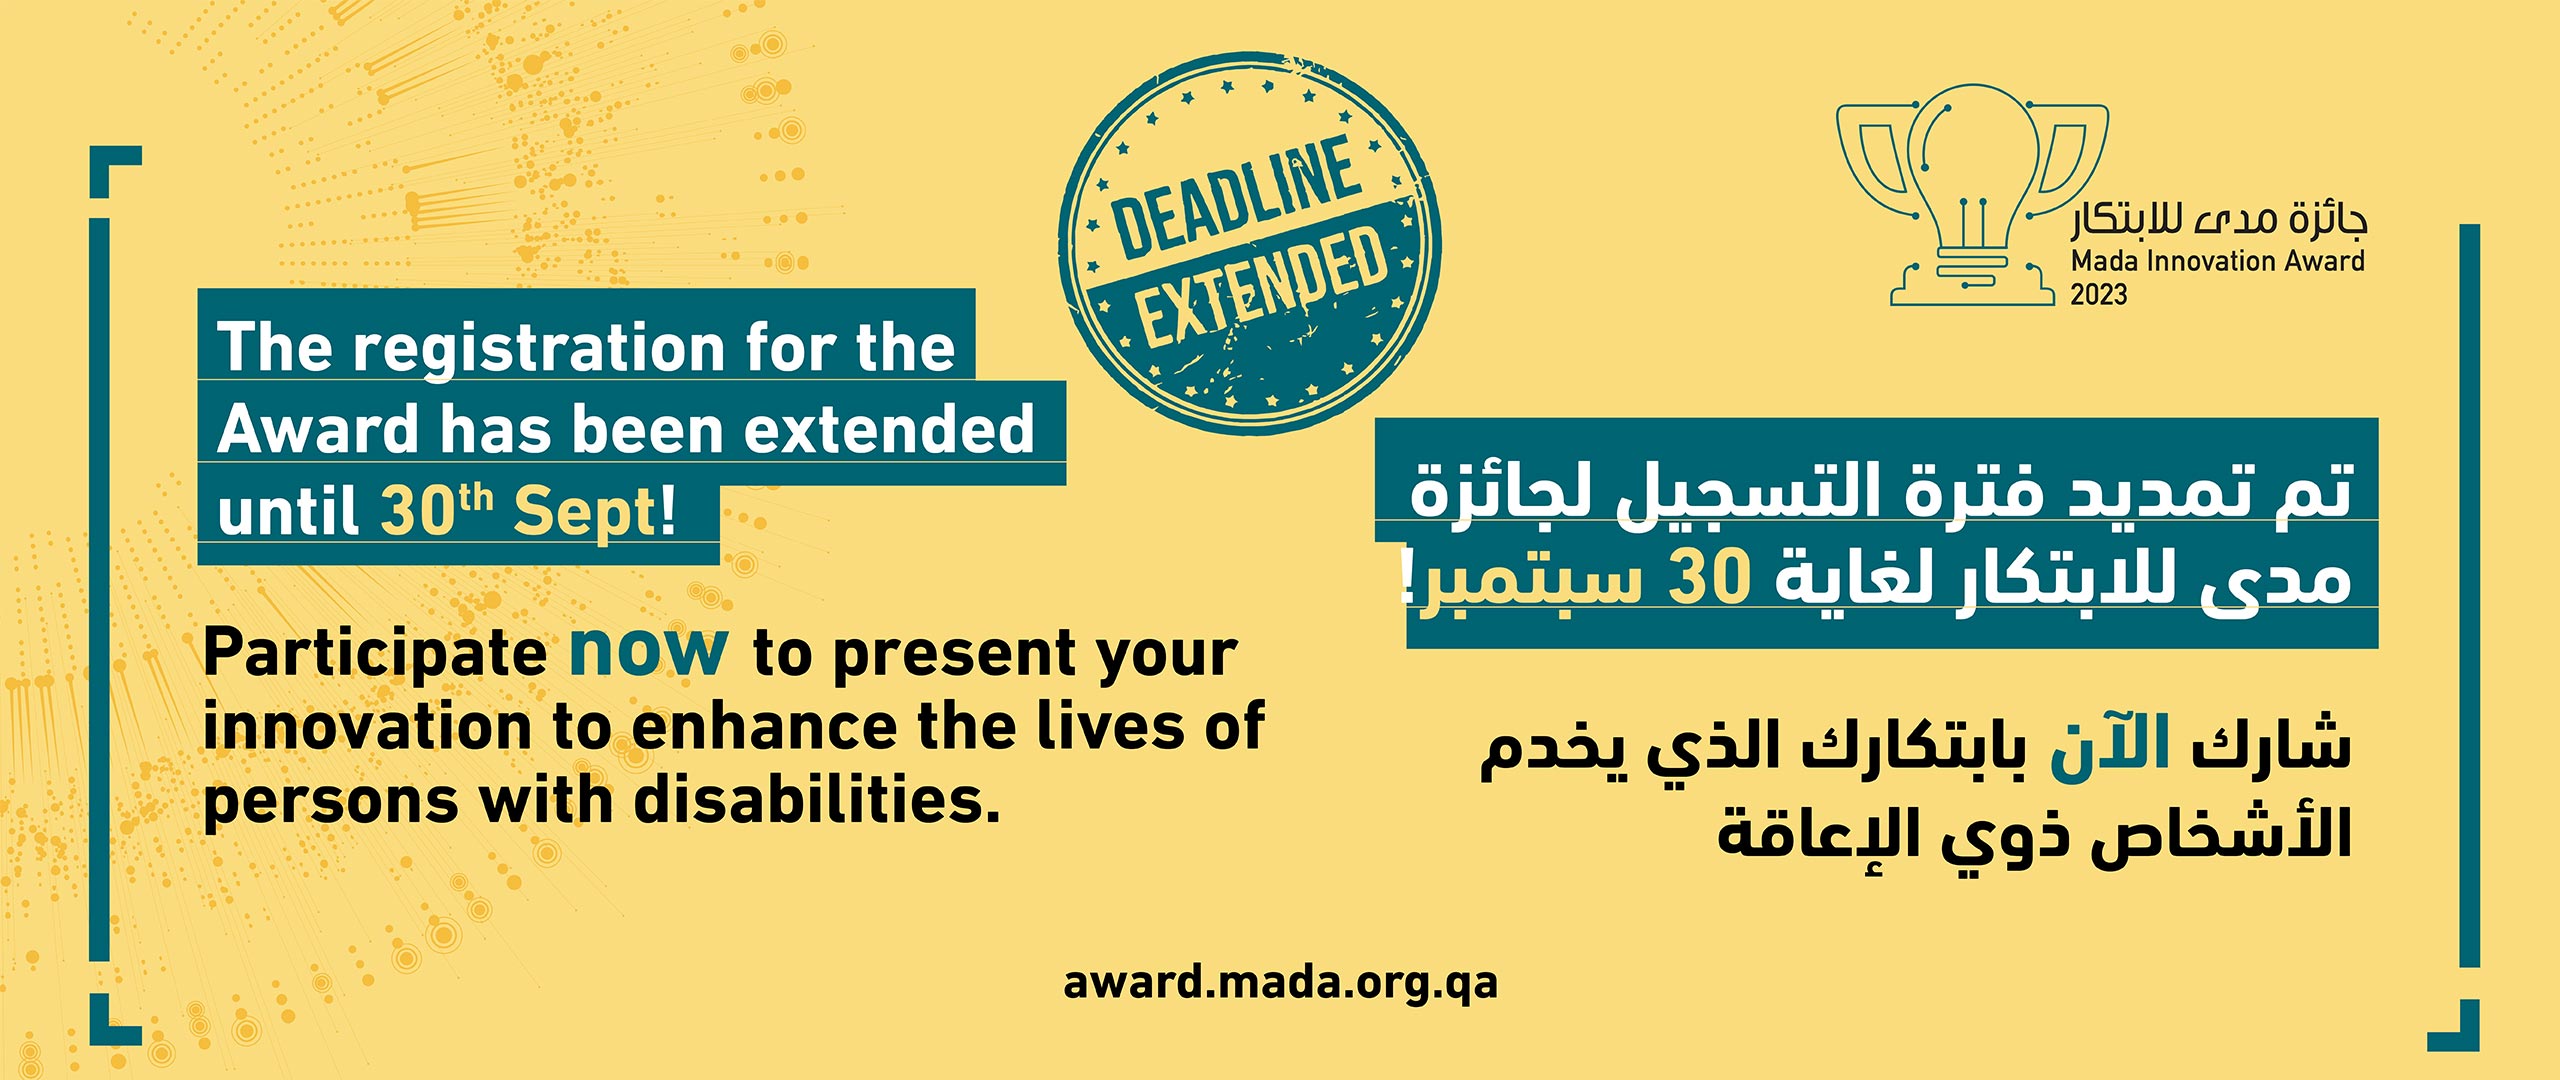 Register for Mada innovation awards